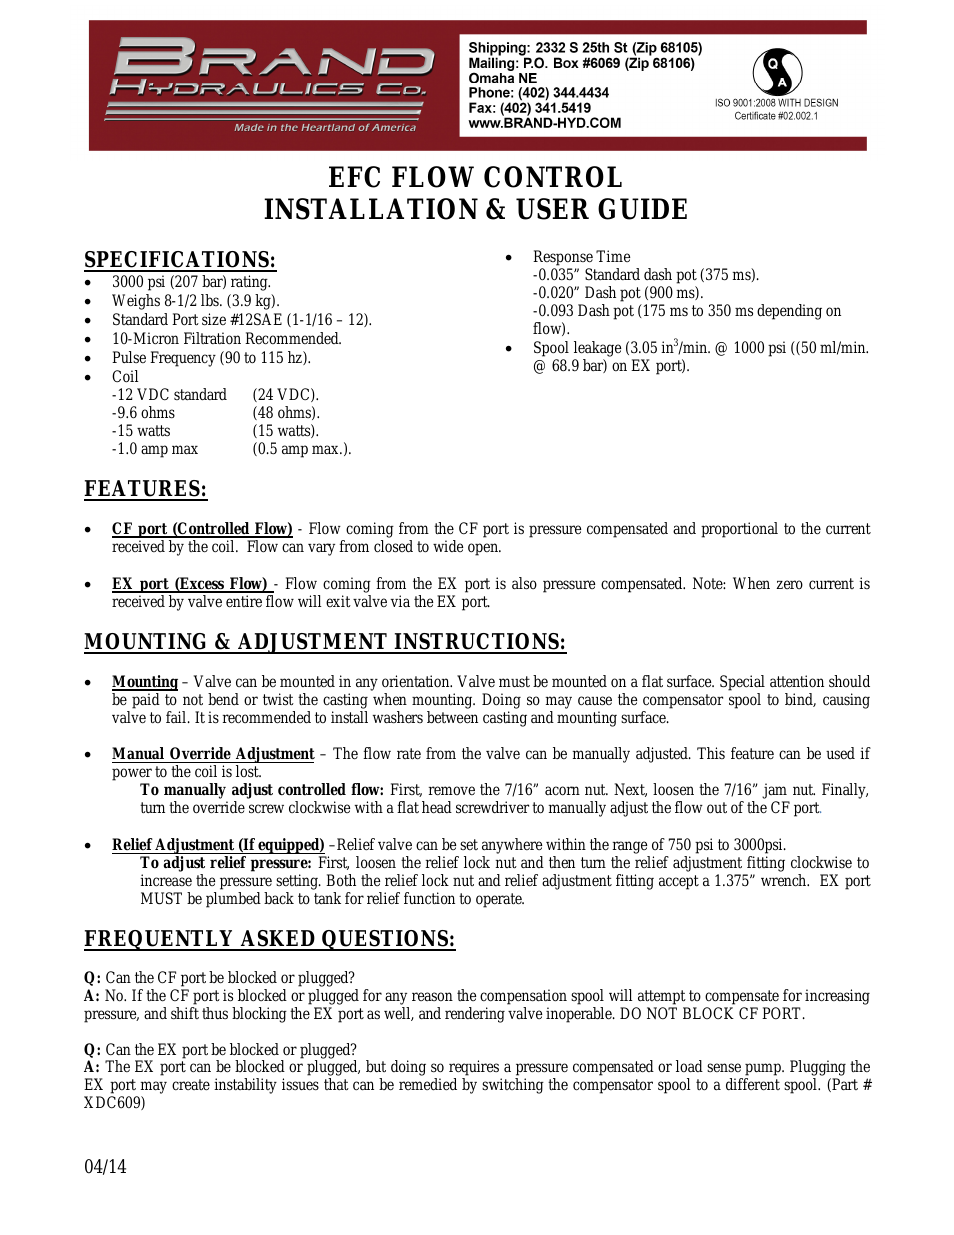 EFC FLOW CONTROL